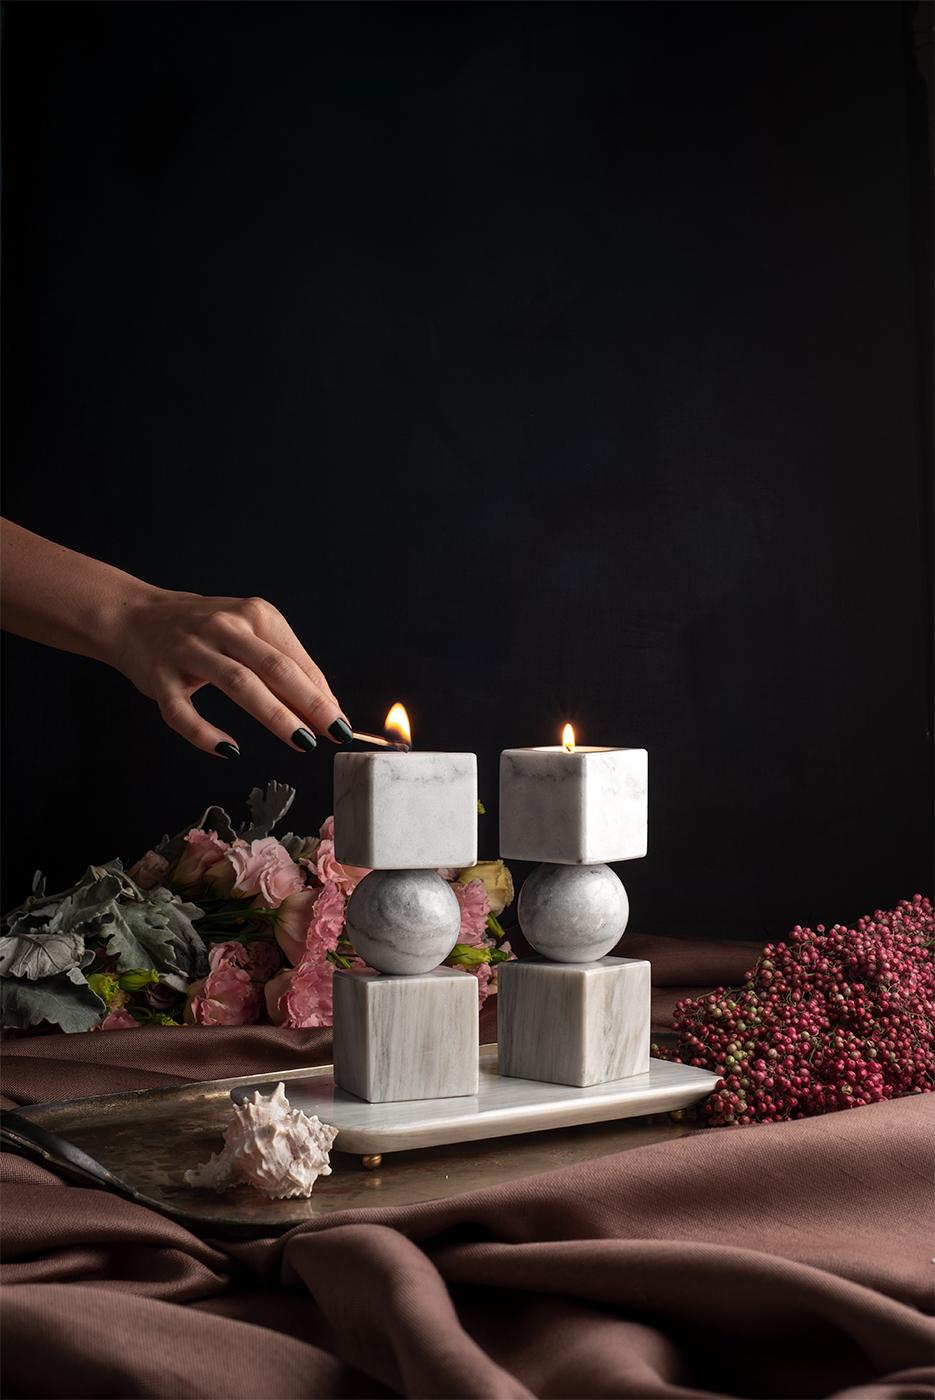 Erhöhen Sie Ihr Ambiente mit dem fesselnden Charme der Totem-Kerzenhalter von bruci, einem erhabenen skulpturalen Meisterwerk, das jede raffinierte Umgebung schmückt. Dieses von erfahrenen Kunsthandwerkern sorgfältig gefertigte Dekorationsset geht